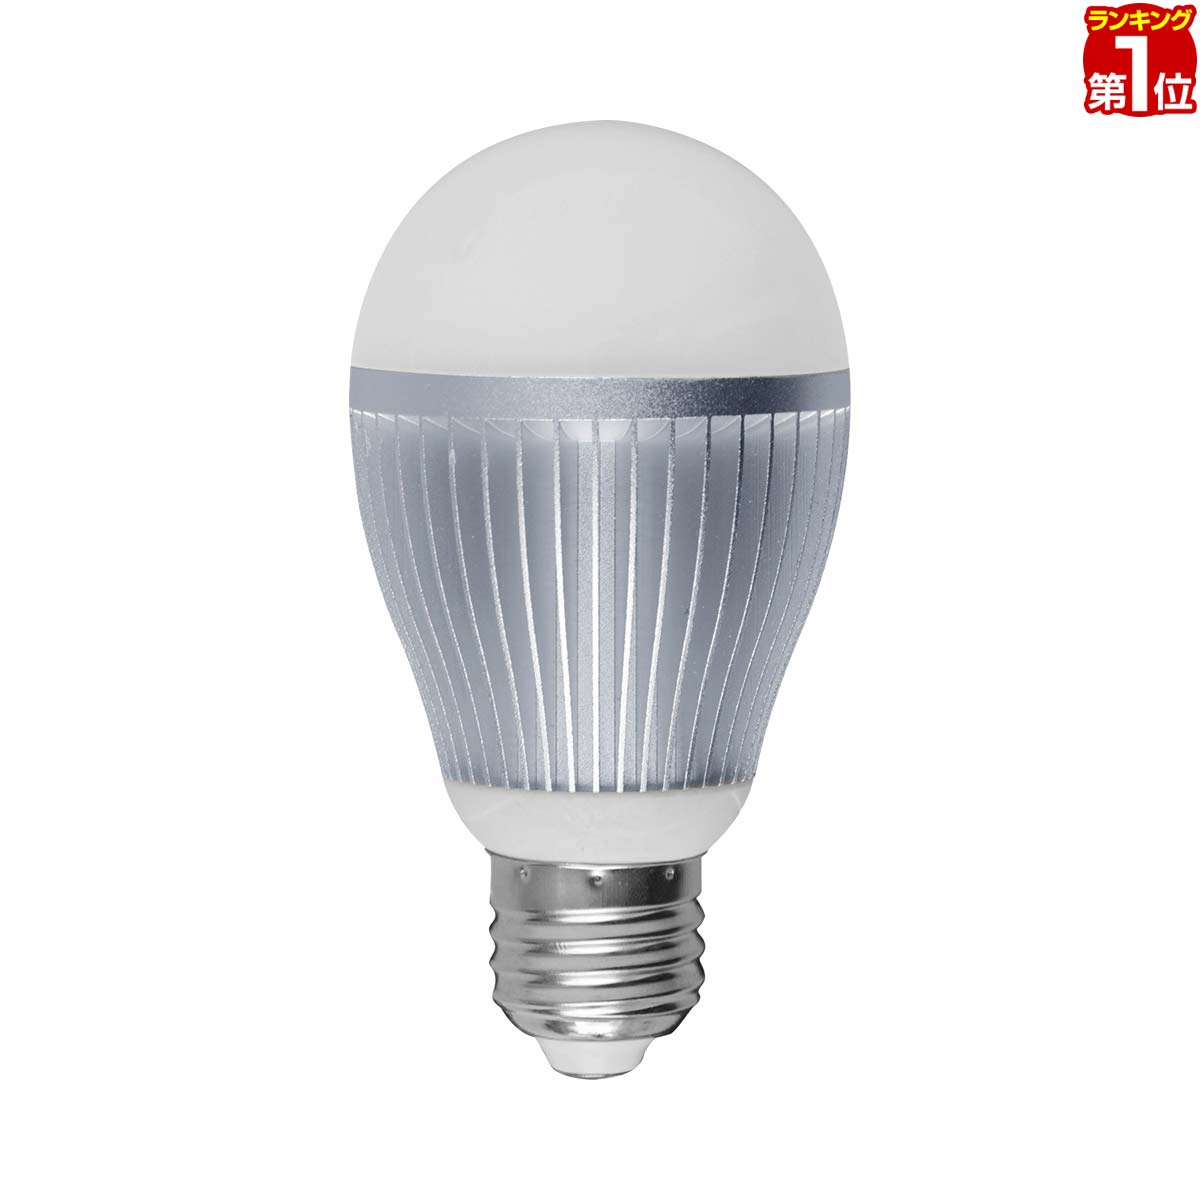 【楽天1位】電球 led E26 LED電球 2.4GHz無線式リモコン対応 6W / 650lm / 口金E26 LEDライト 超寿命 明るい リモコ…